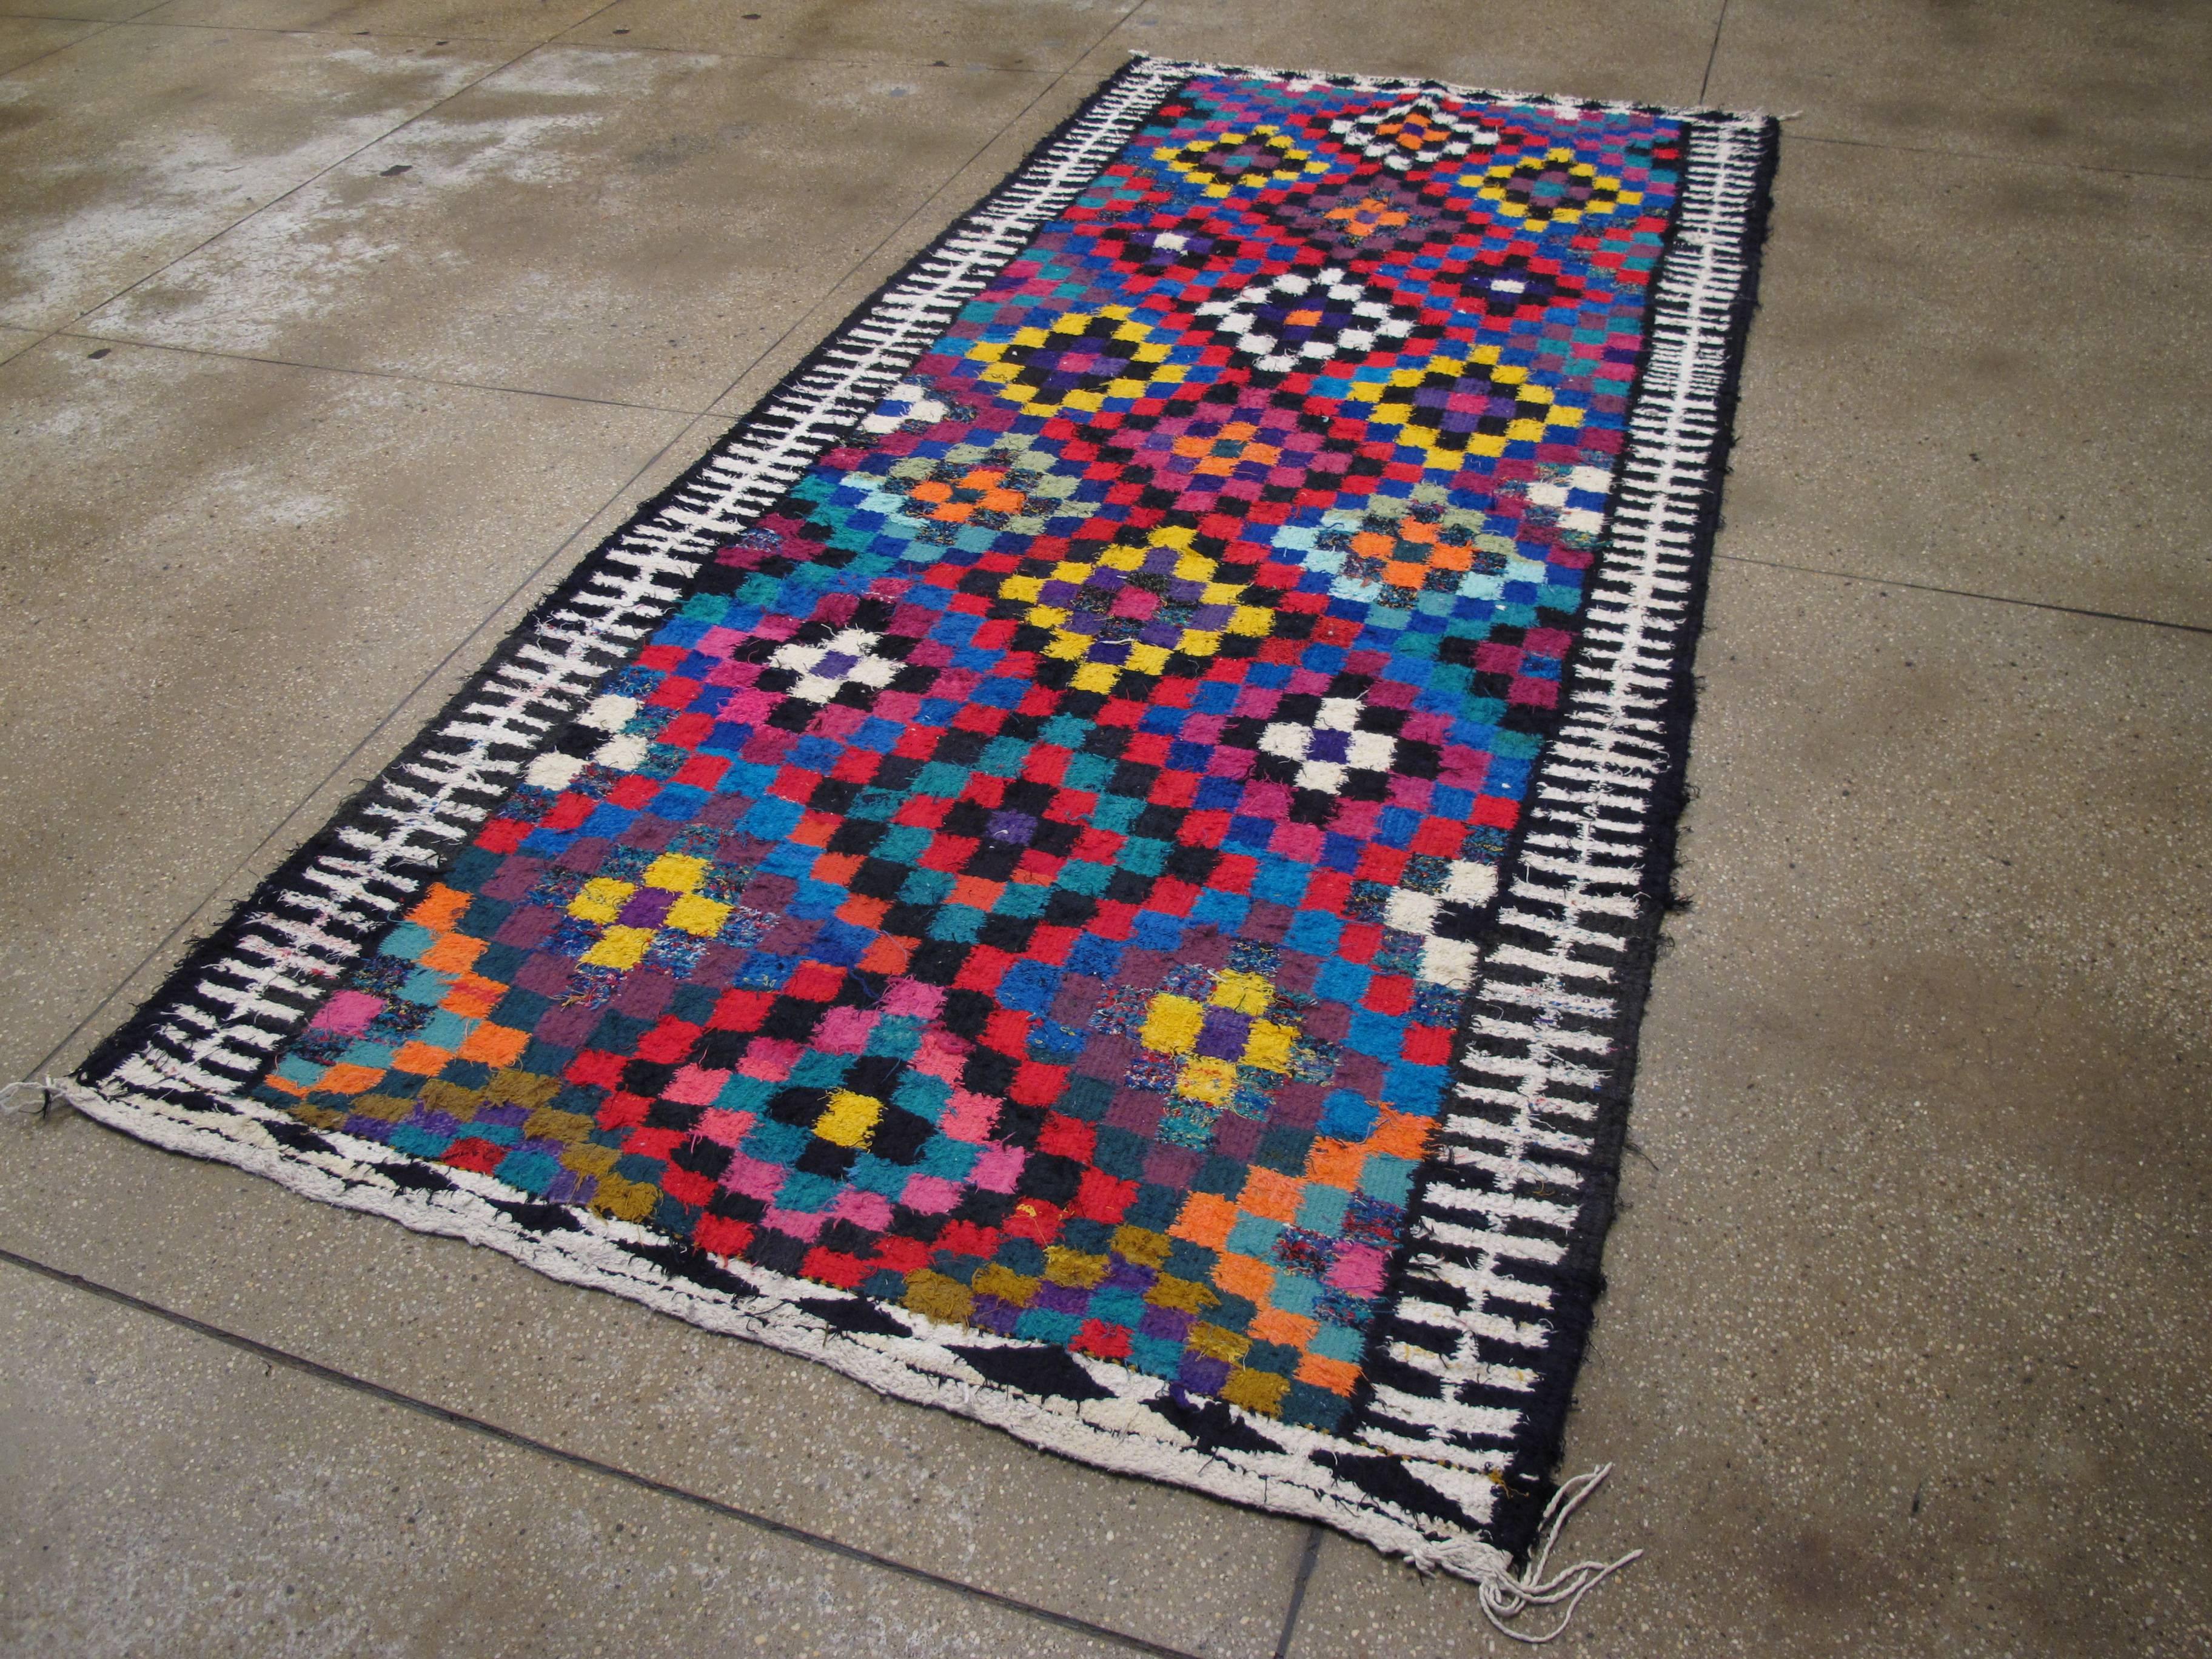 Un tapis Kilim persan vintage coloré, tissé à plat, datant du milieu du 20e siècle (réversible).